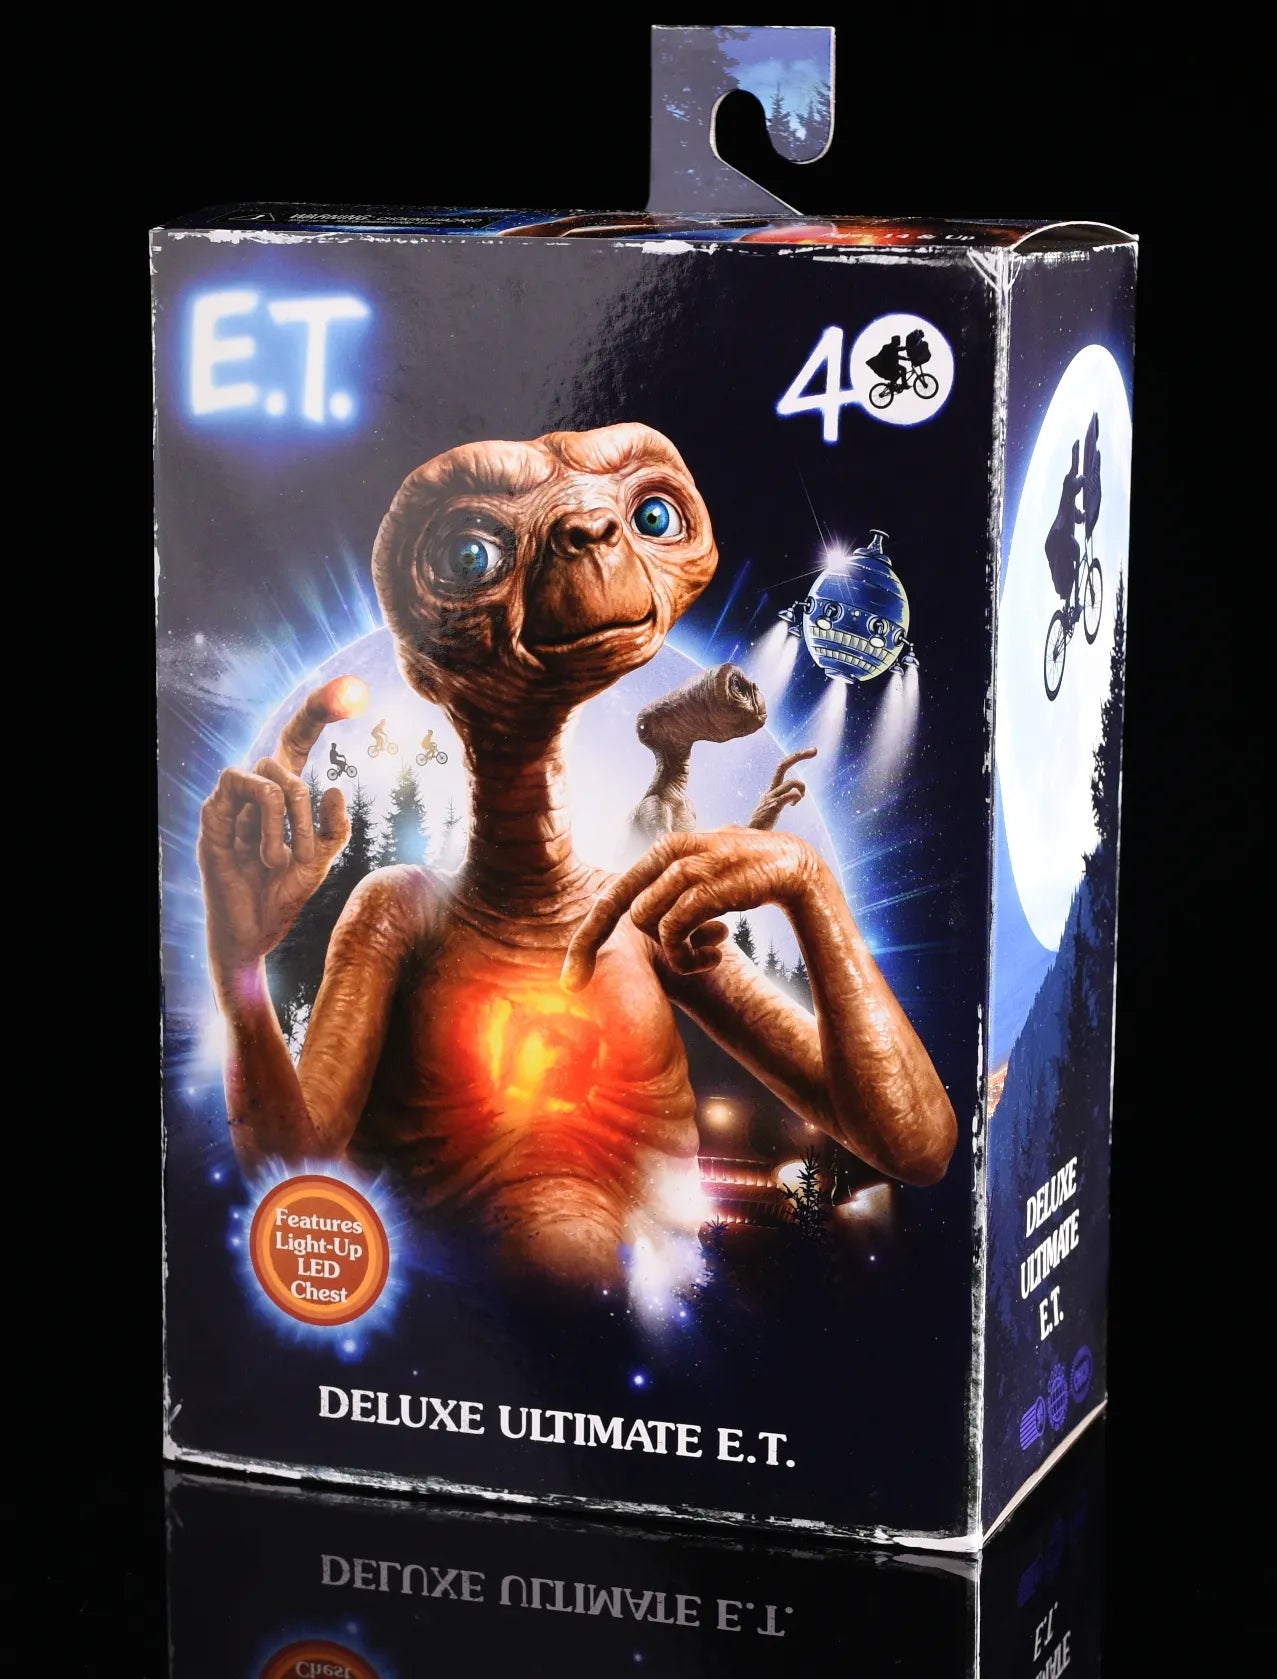 Neca E.T Deluxe Ultimate figure